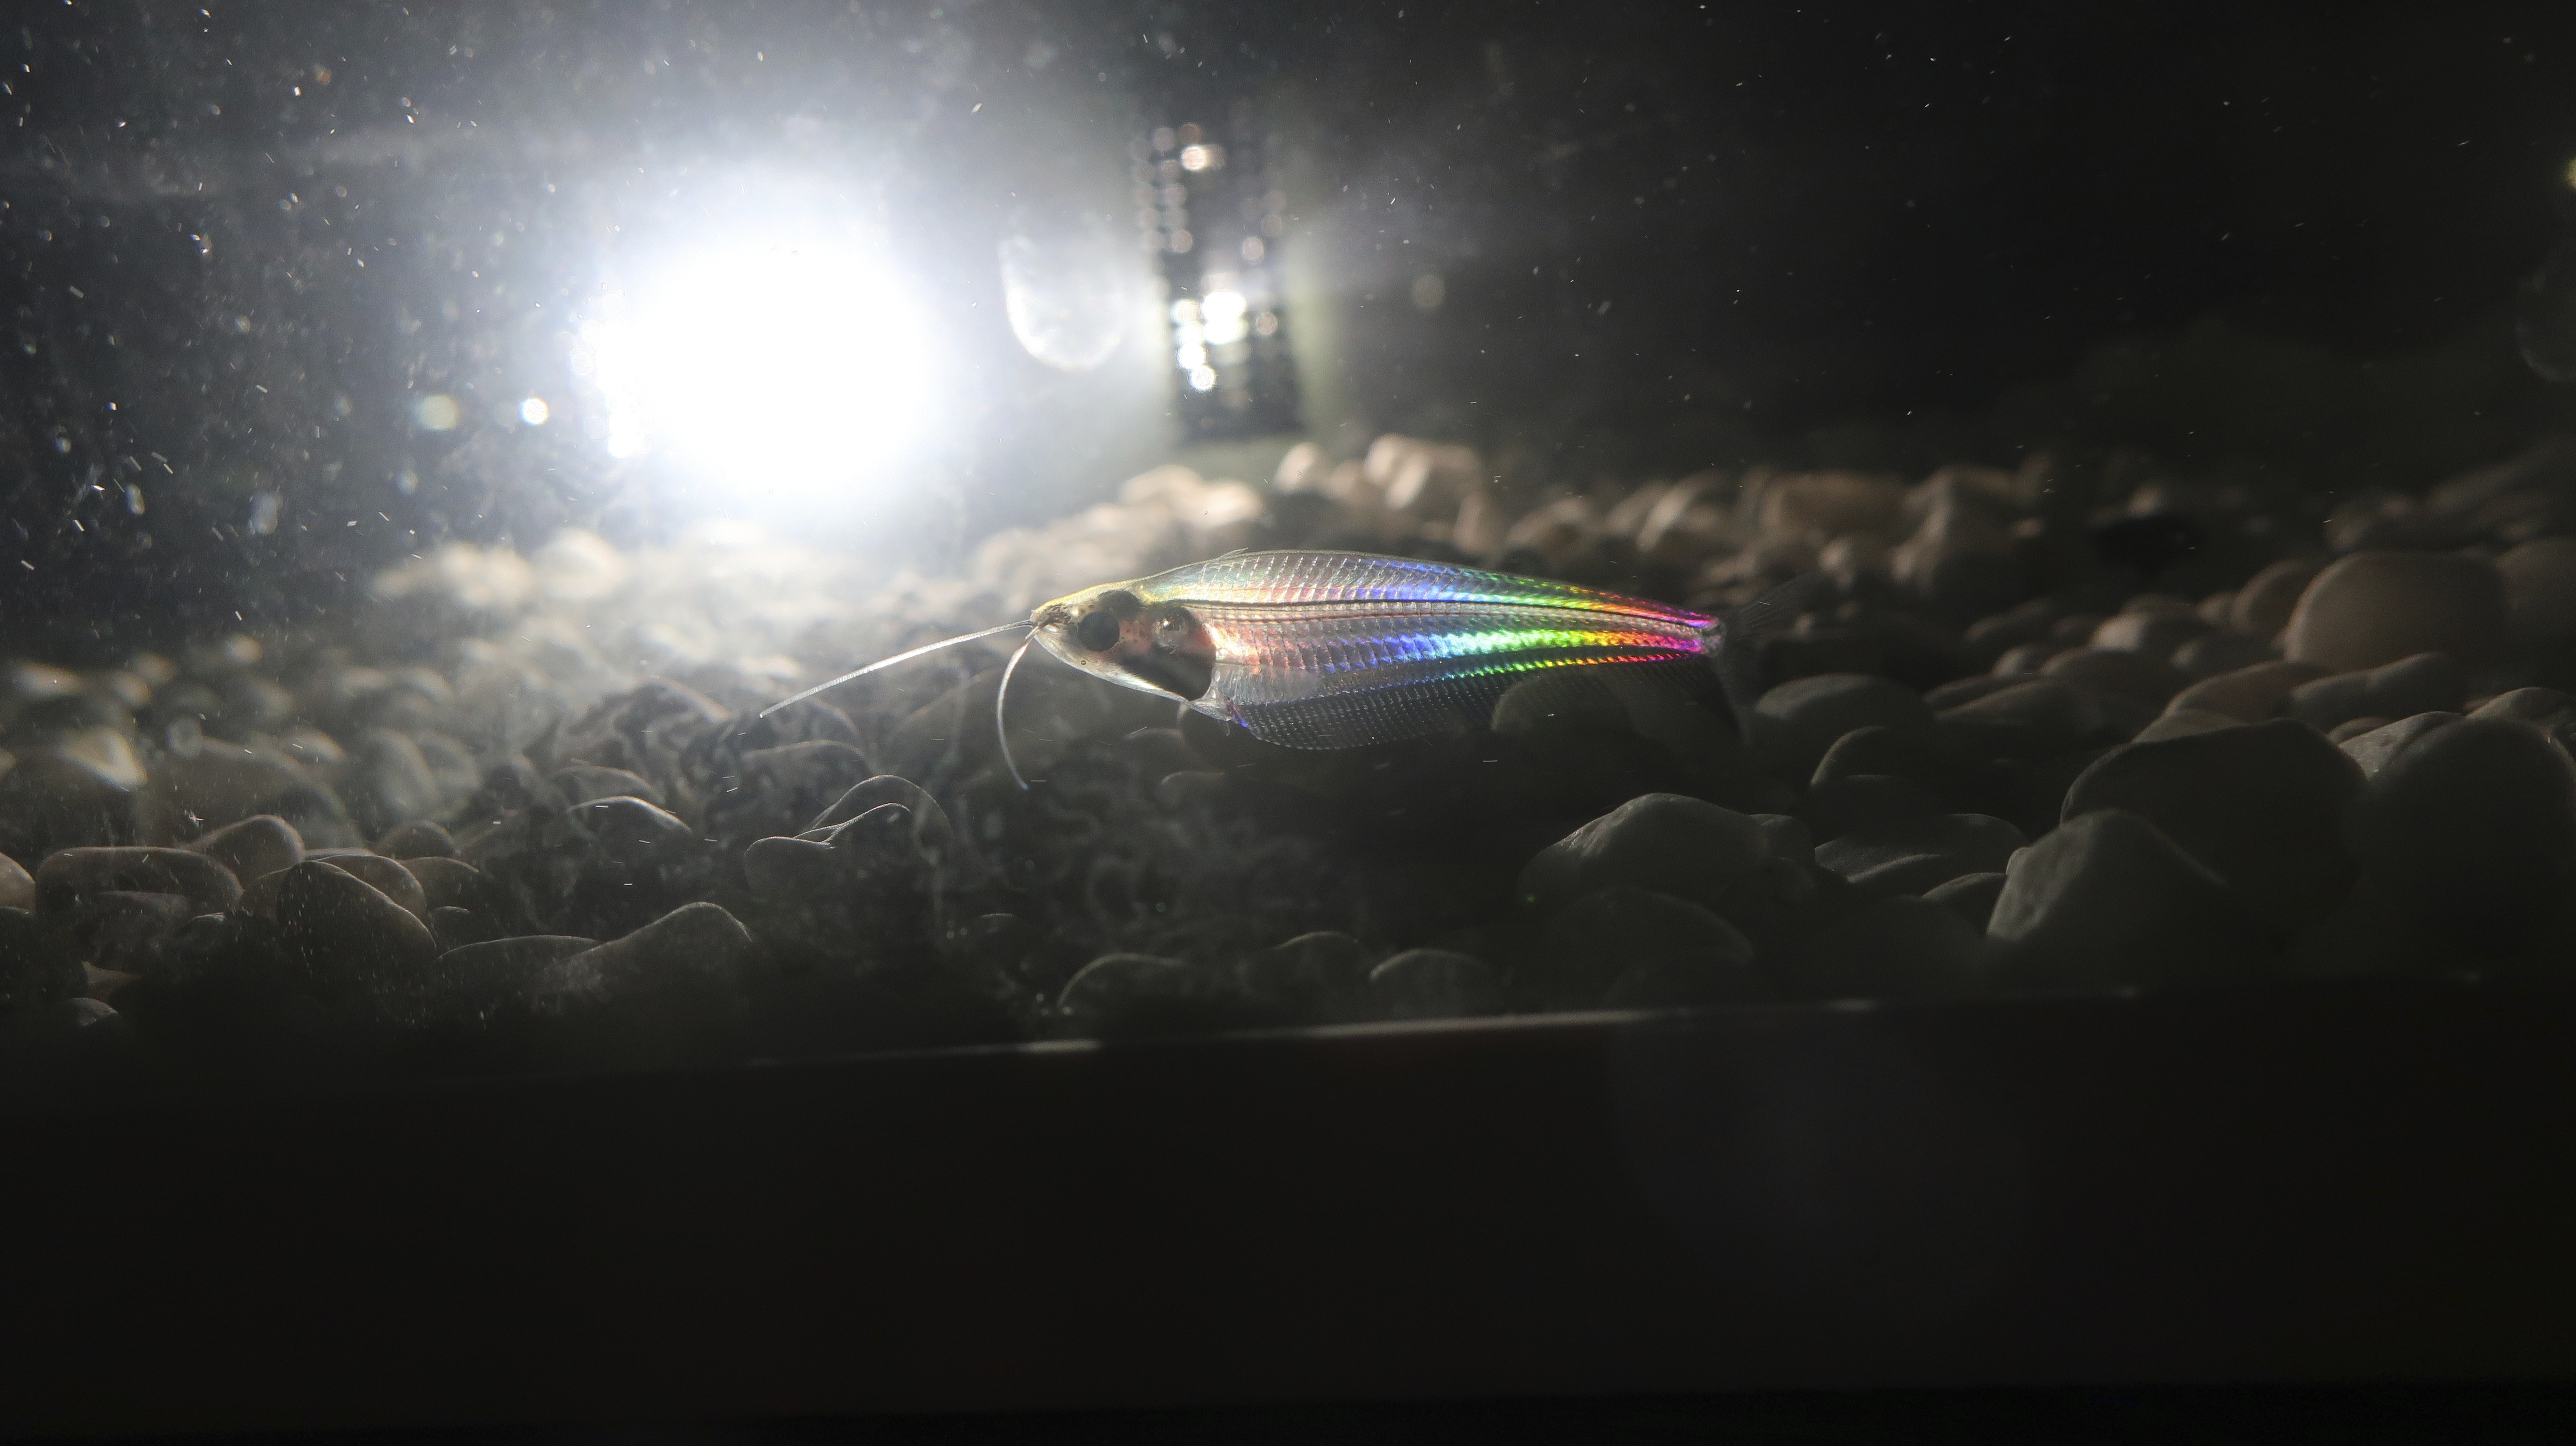 El bagre fantasma tiene un cuerpo transparente que parpadea con los colores del arcoíris cuando le da la luz (Xiujun Fan/Qibin Zhao via AP)